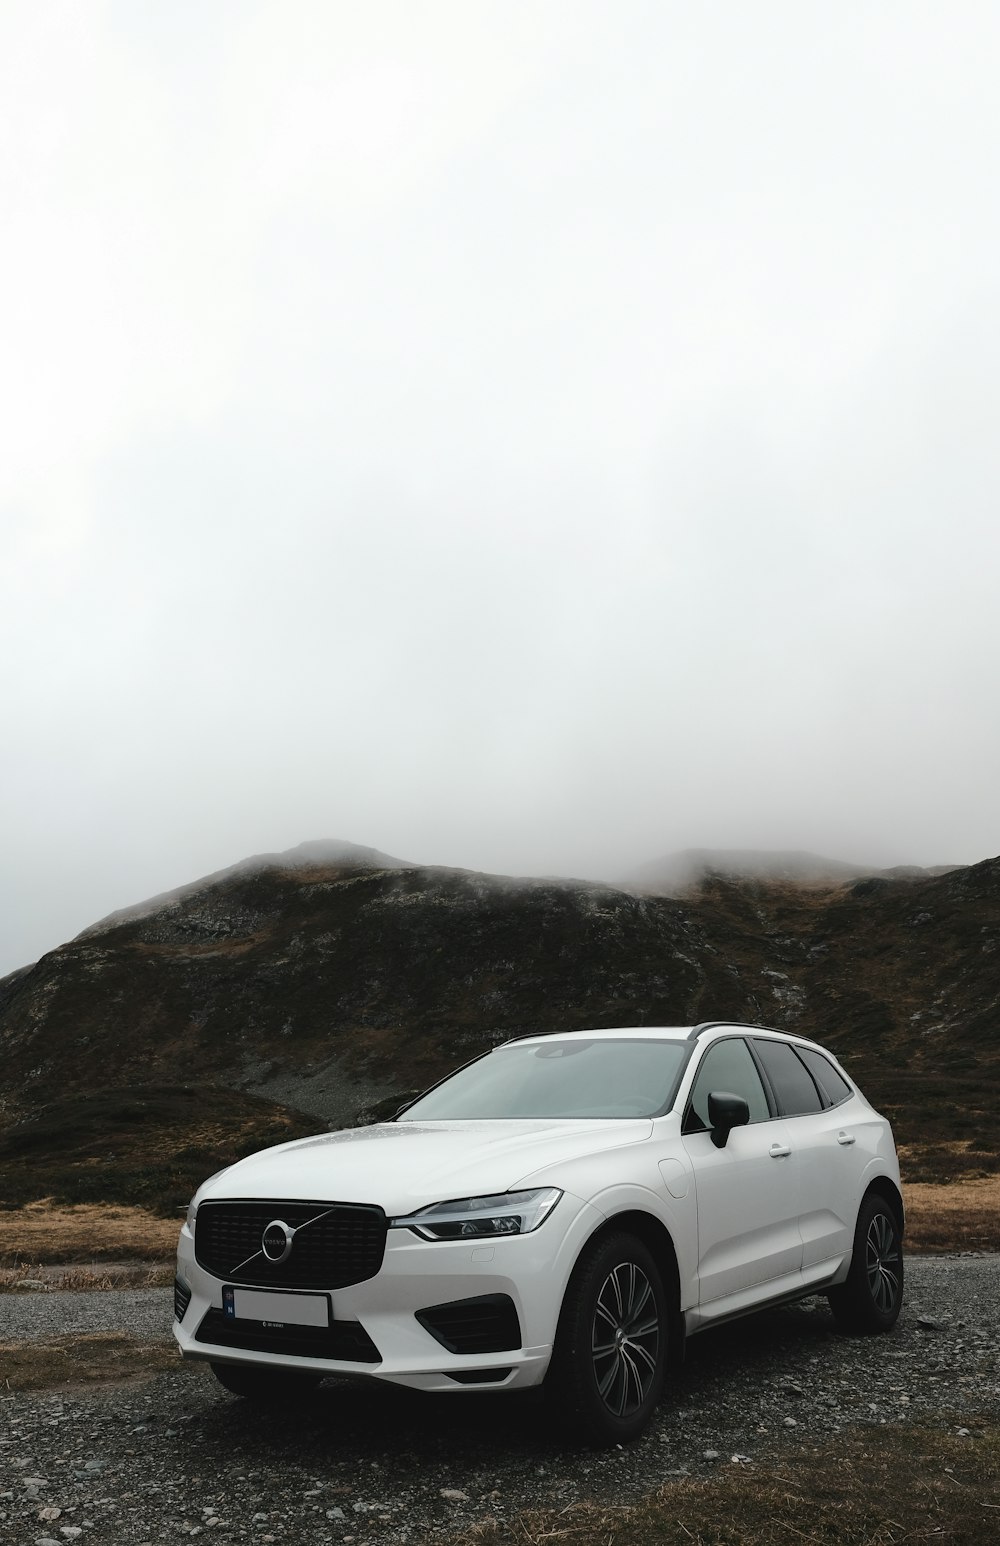 Un'auto bianca parcheggiata su una strada sterrata con le colline sullo sfondo